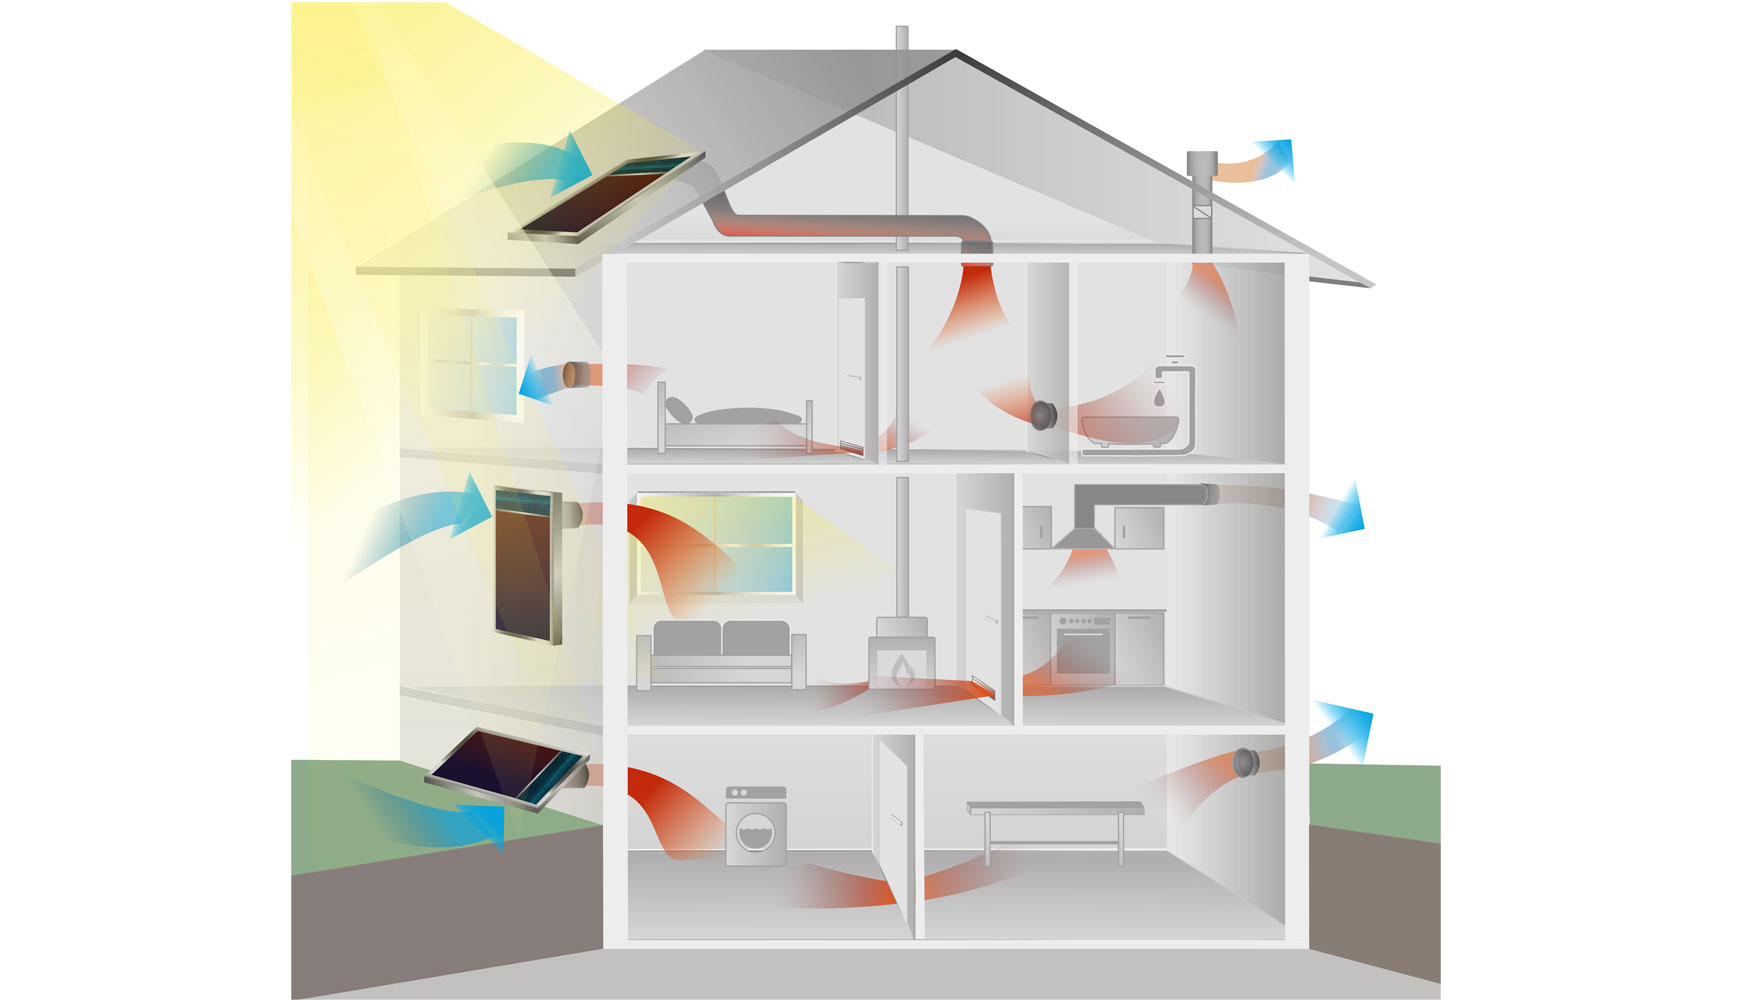 Los colectores solares recogen aire exterior gracias a un ventilador activado por energa solar fotovoltaica y se introduce en la vivienda como aire...